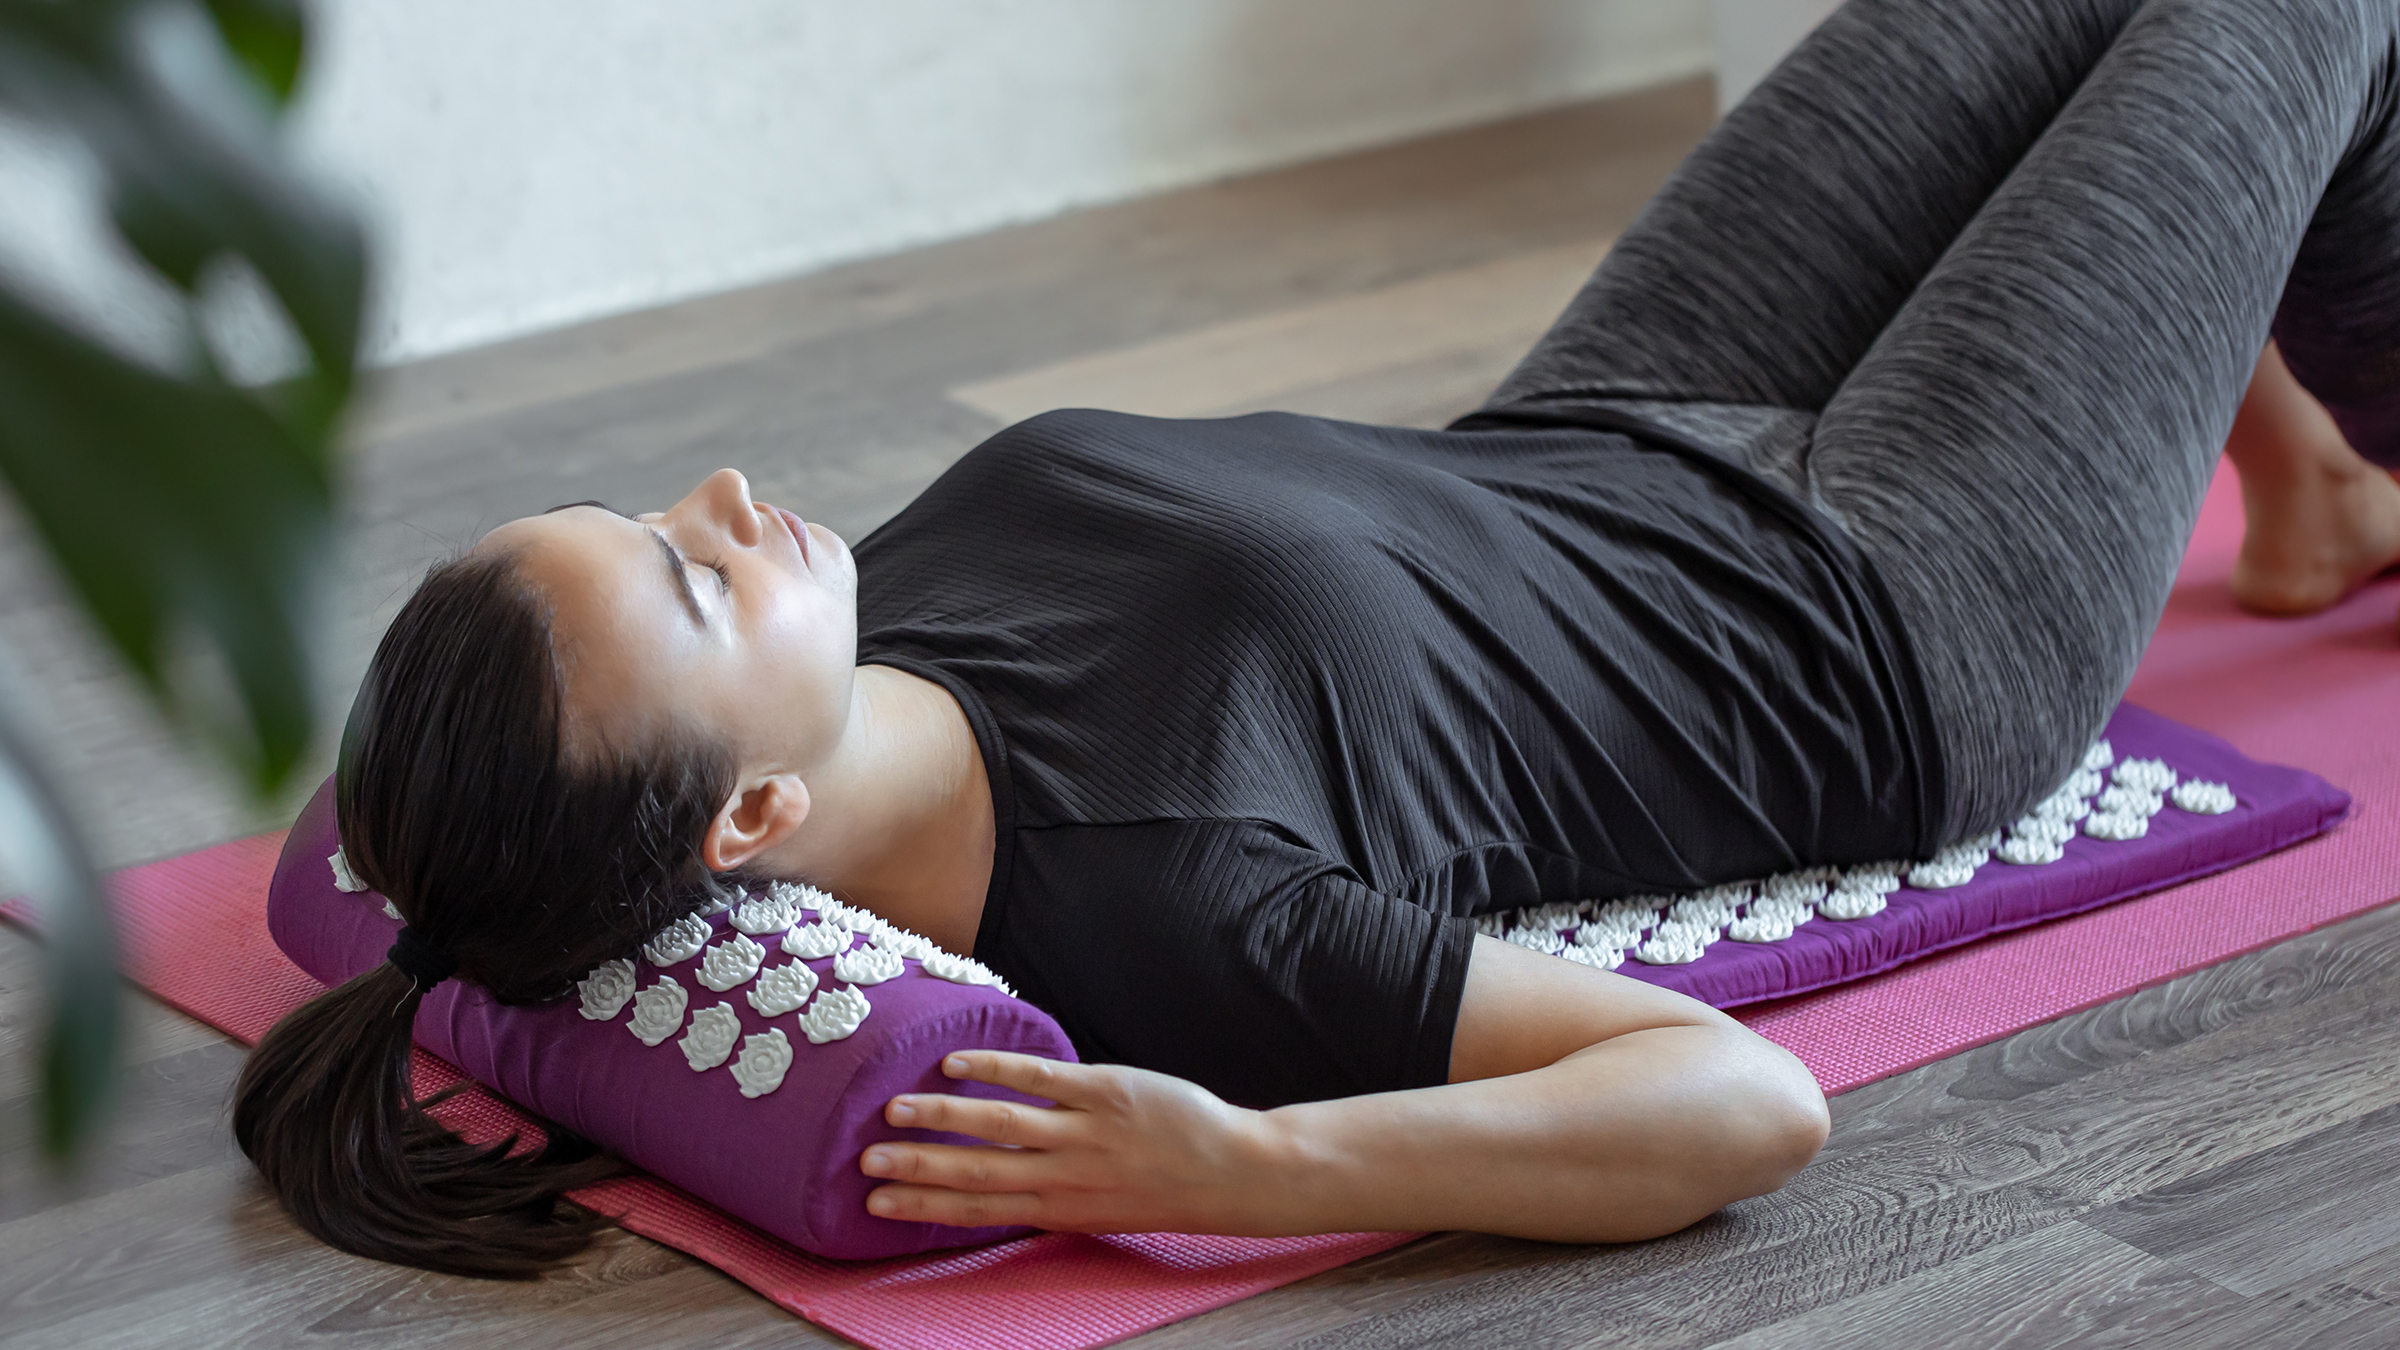 योगा मैट हो सकता है आपके शरीर के लिए नुकसानदायक, इन बीमारियों का बढ़ सकता है खतरा Yoga Mat Side Effects Yoga mat can be harmful for your body, there is a risk of these diseases